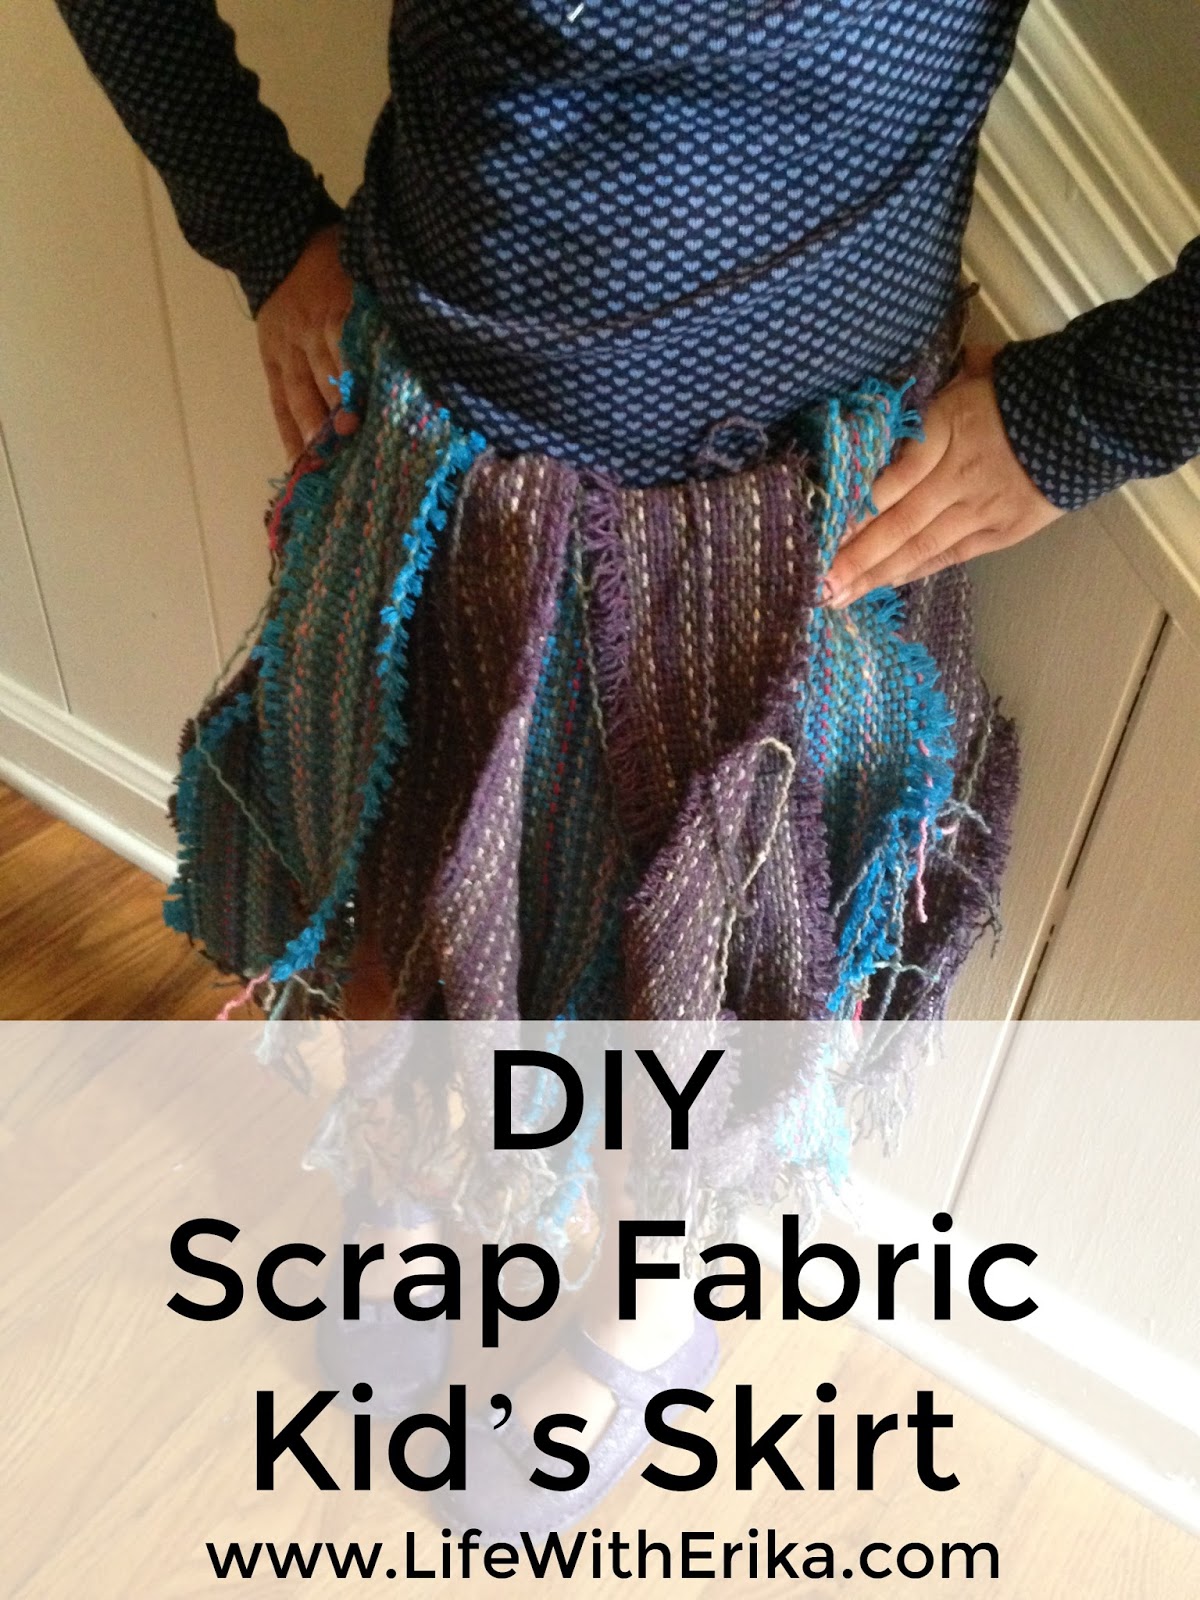 Life with Erika: DIY Scrap Fabric Kid’s Skirt